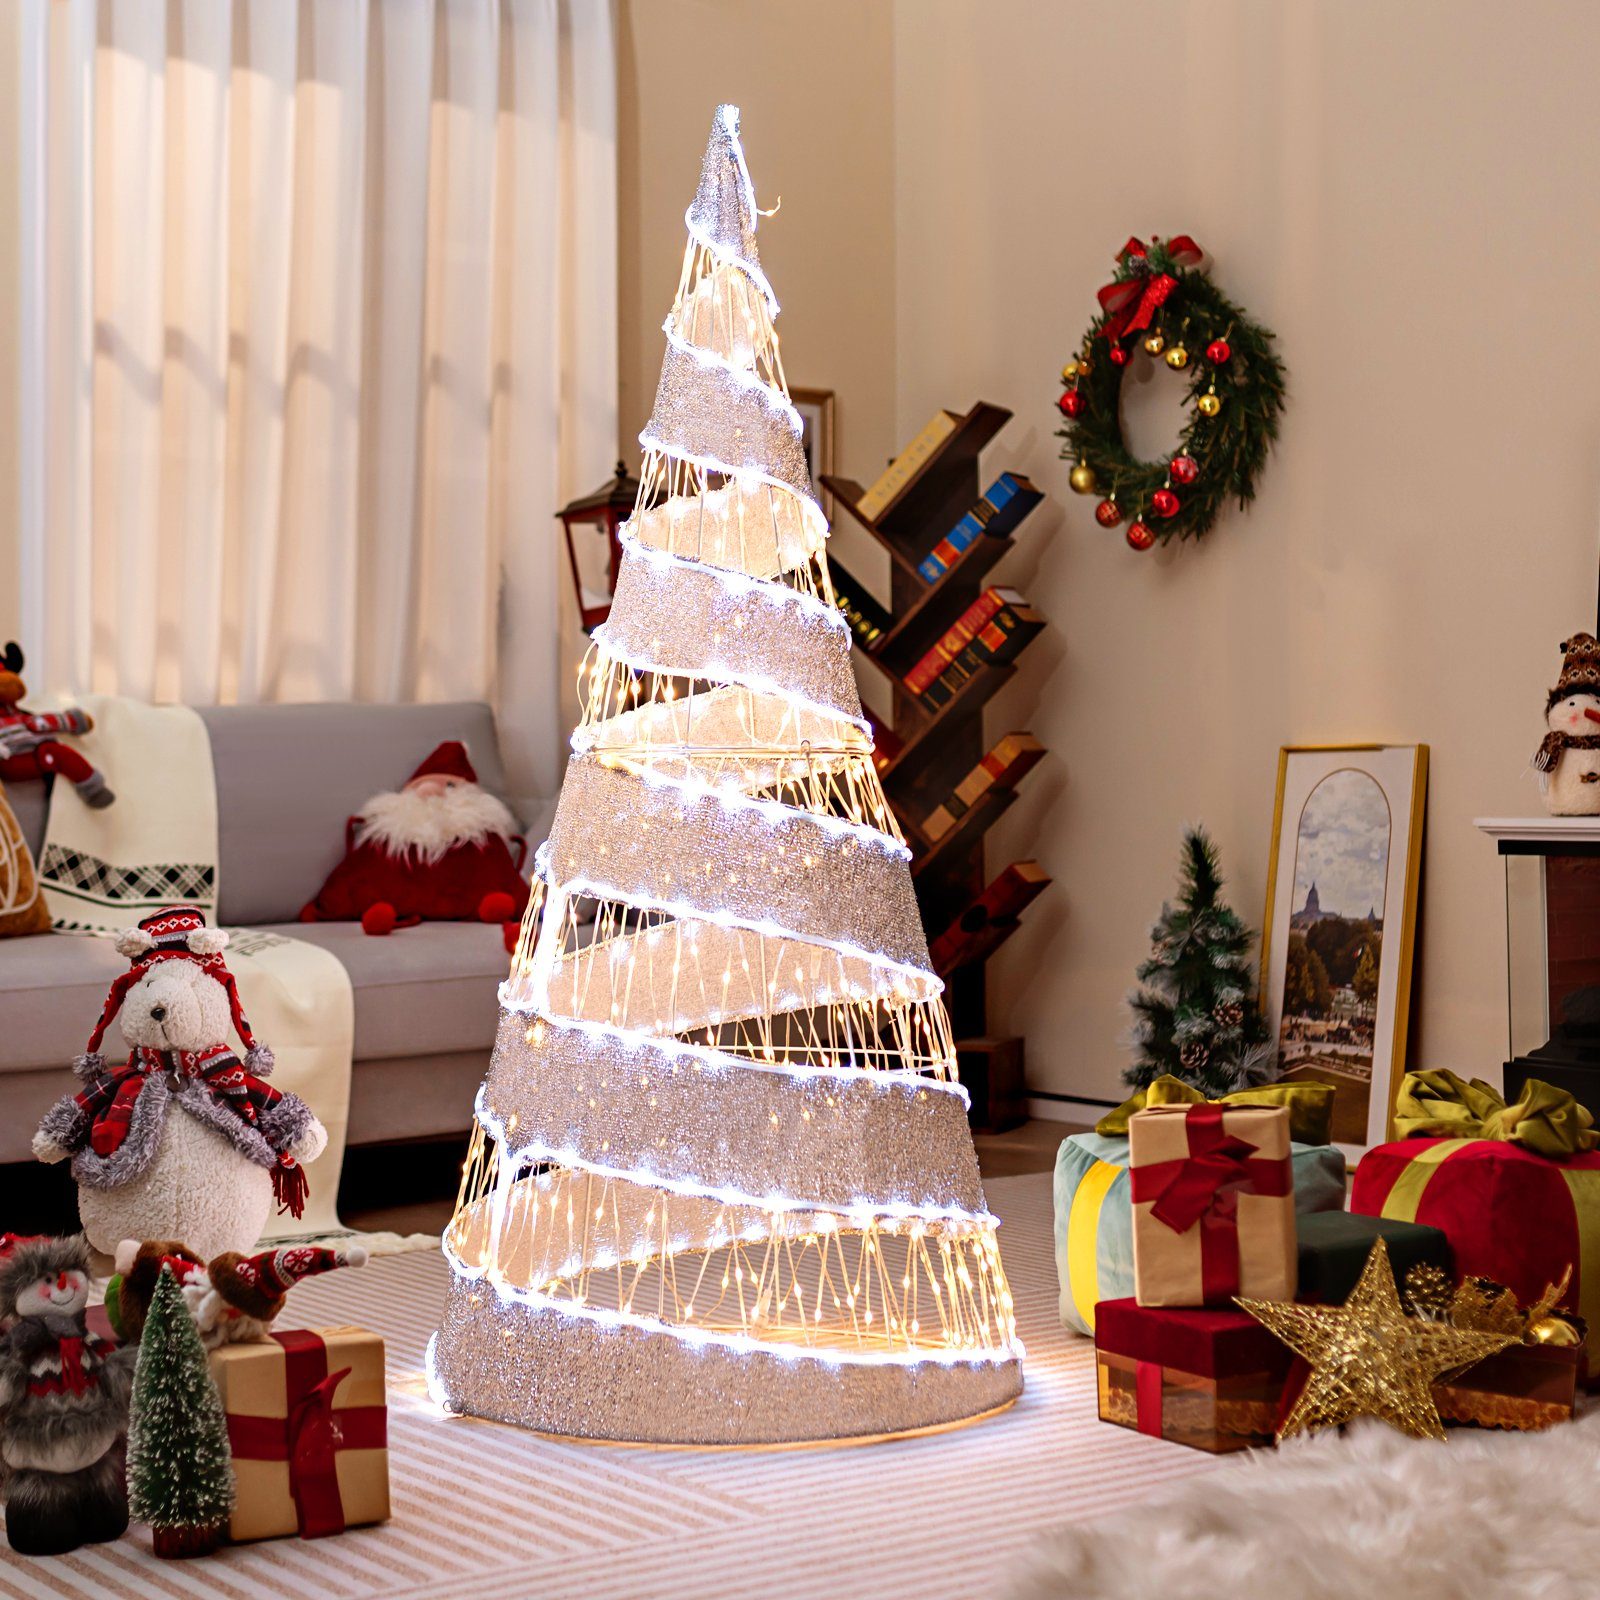 COSTWAY Künstlicher Weihnachtsbaum, 155cm, 550 LEDs Weihnachtsdeko klappbar